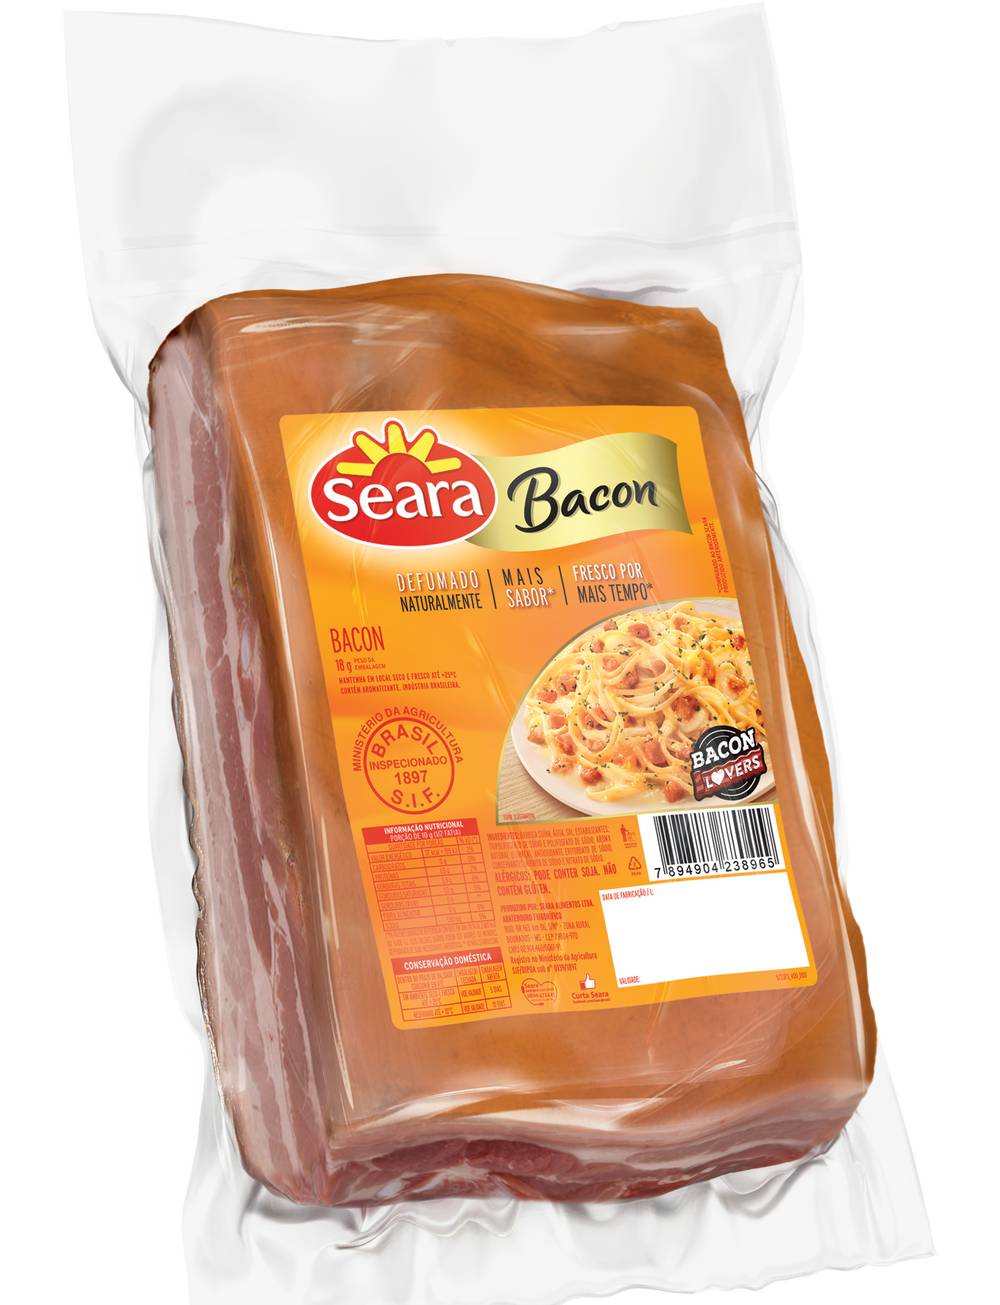 Seara Bacon pedaço (Embalagem: 1,1 kg aprox)